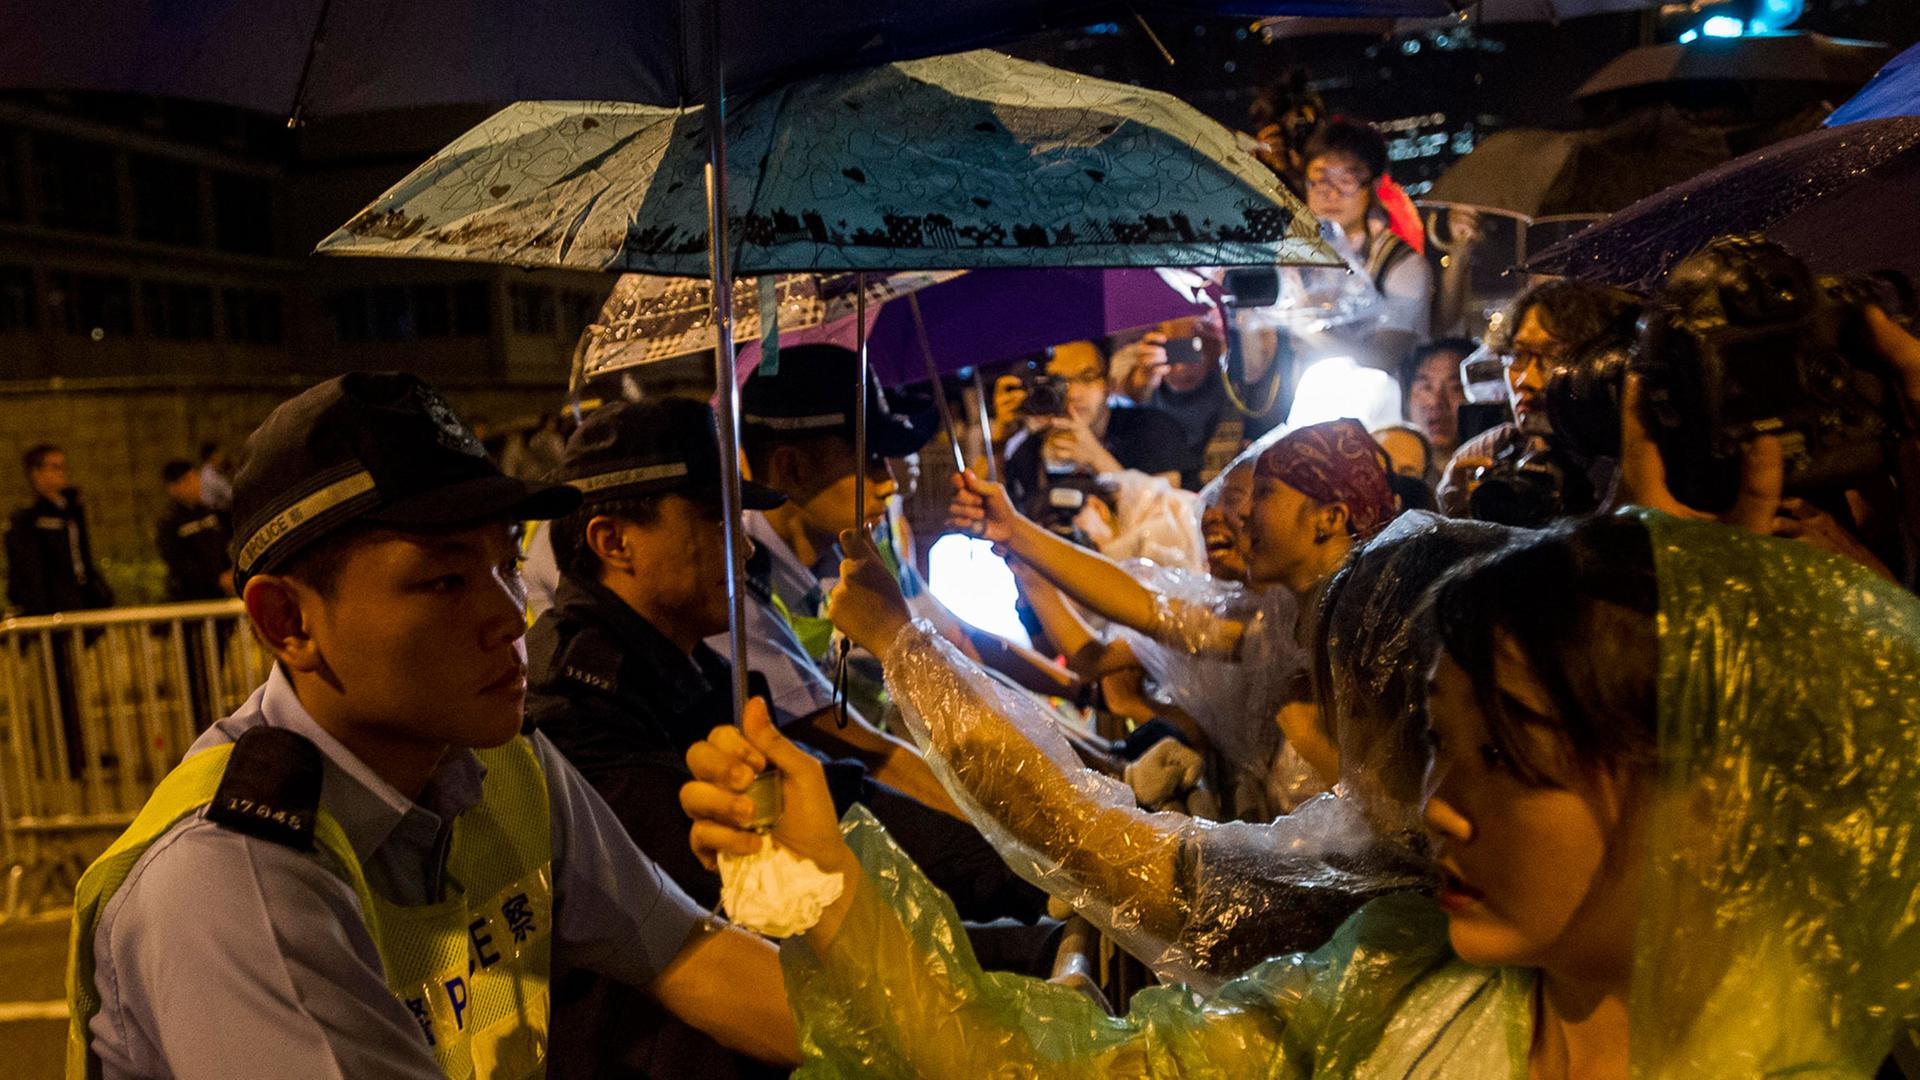 Teilnehmer der Demokratiebewegung in Hongkong demonstrieren im Regierungsviertel - sie verlangen den Rücktritt des Regierungschefs der chinesischen Sonderverwaltungszone.